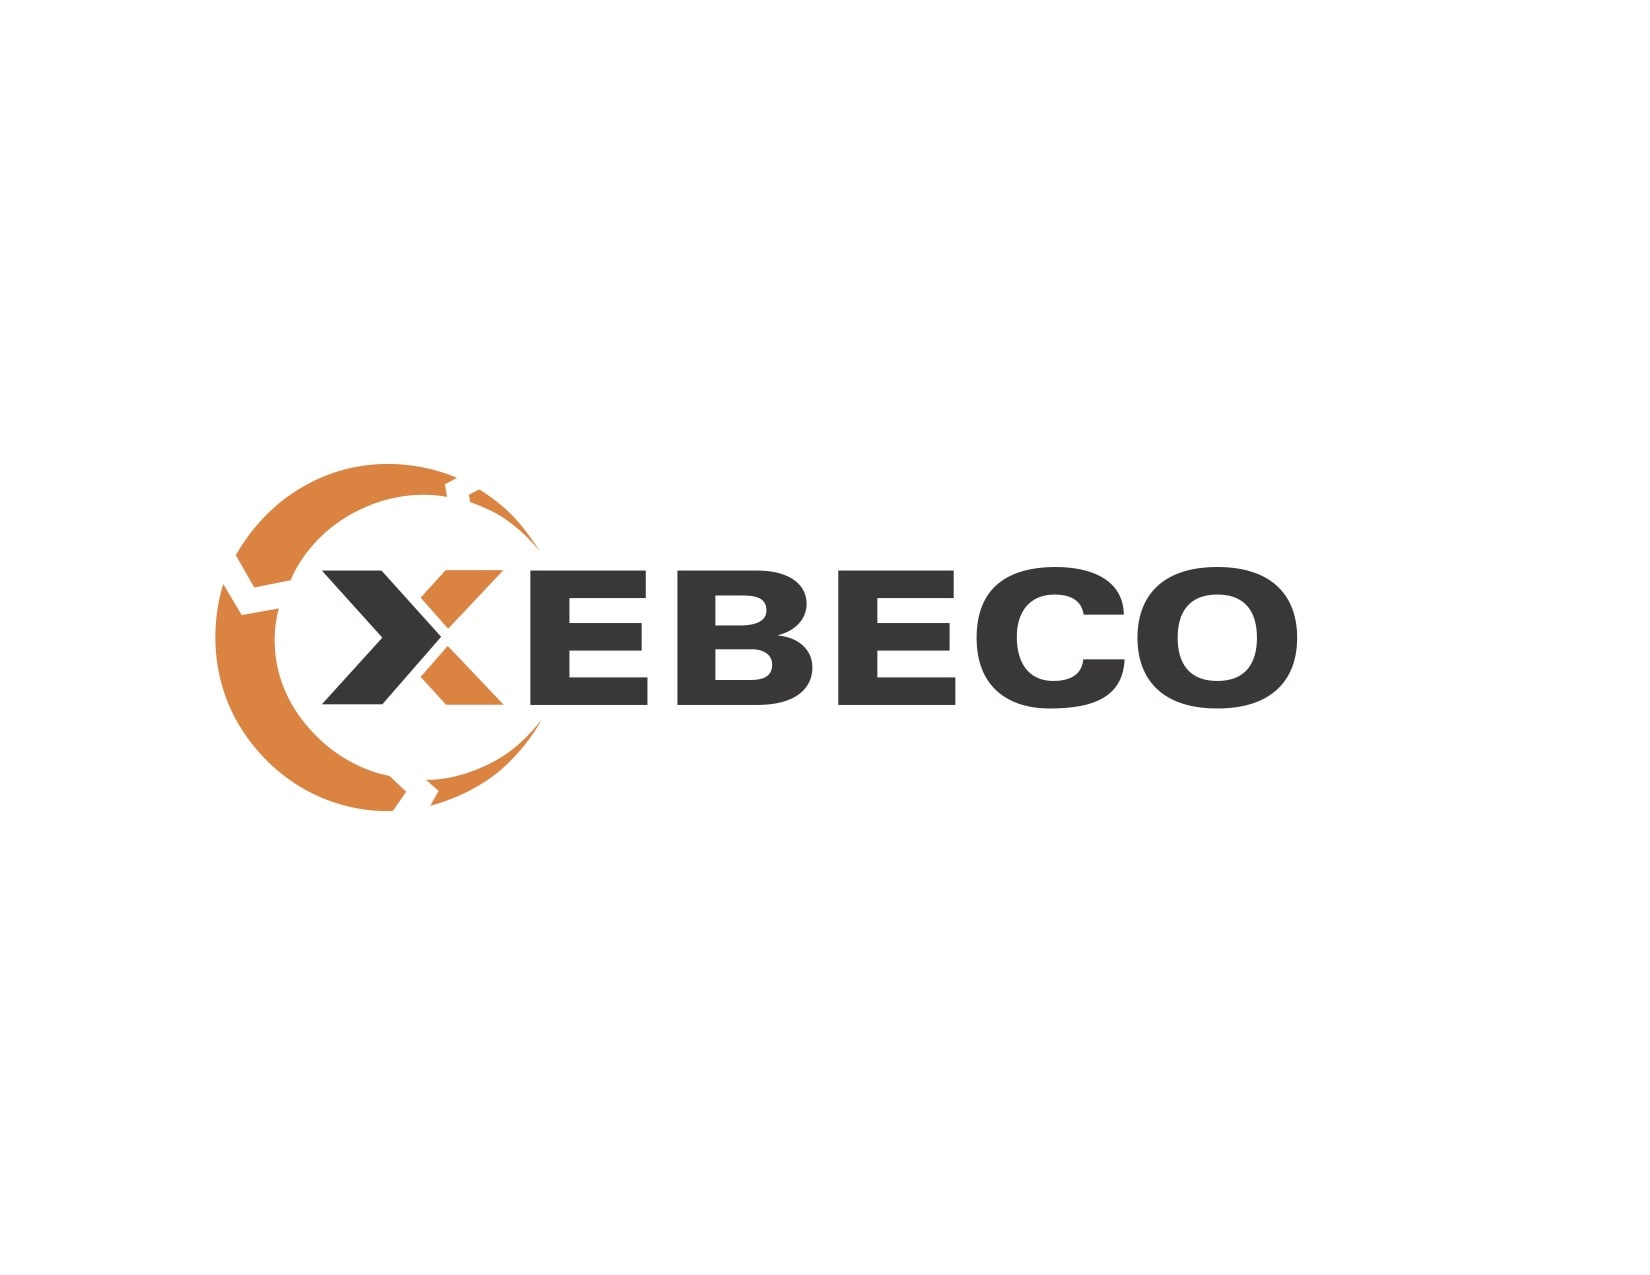 Xebeco Logo